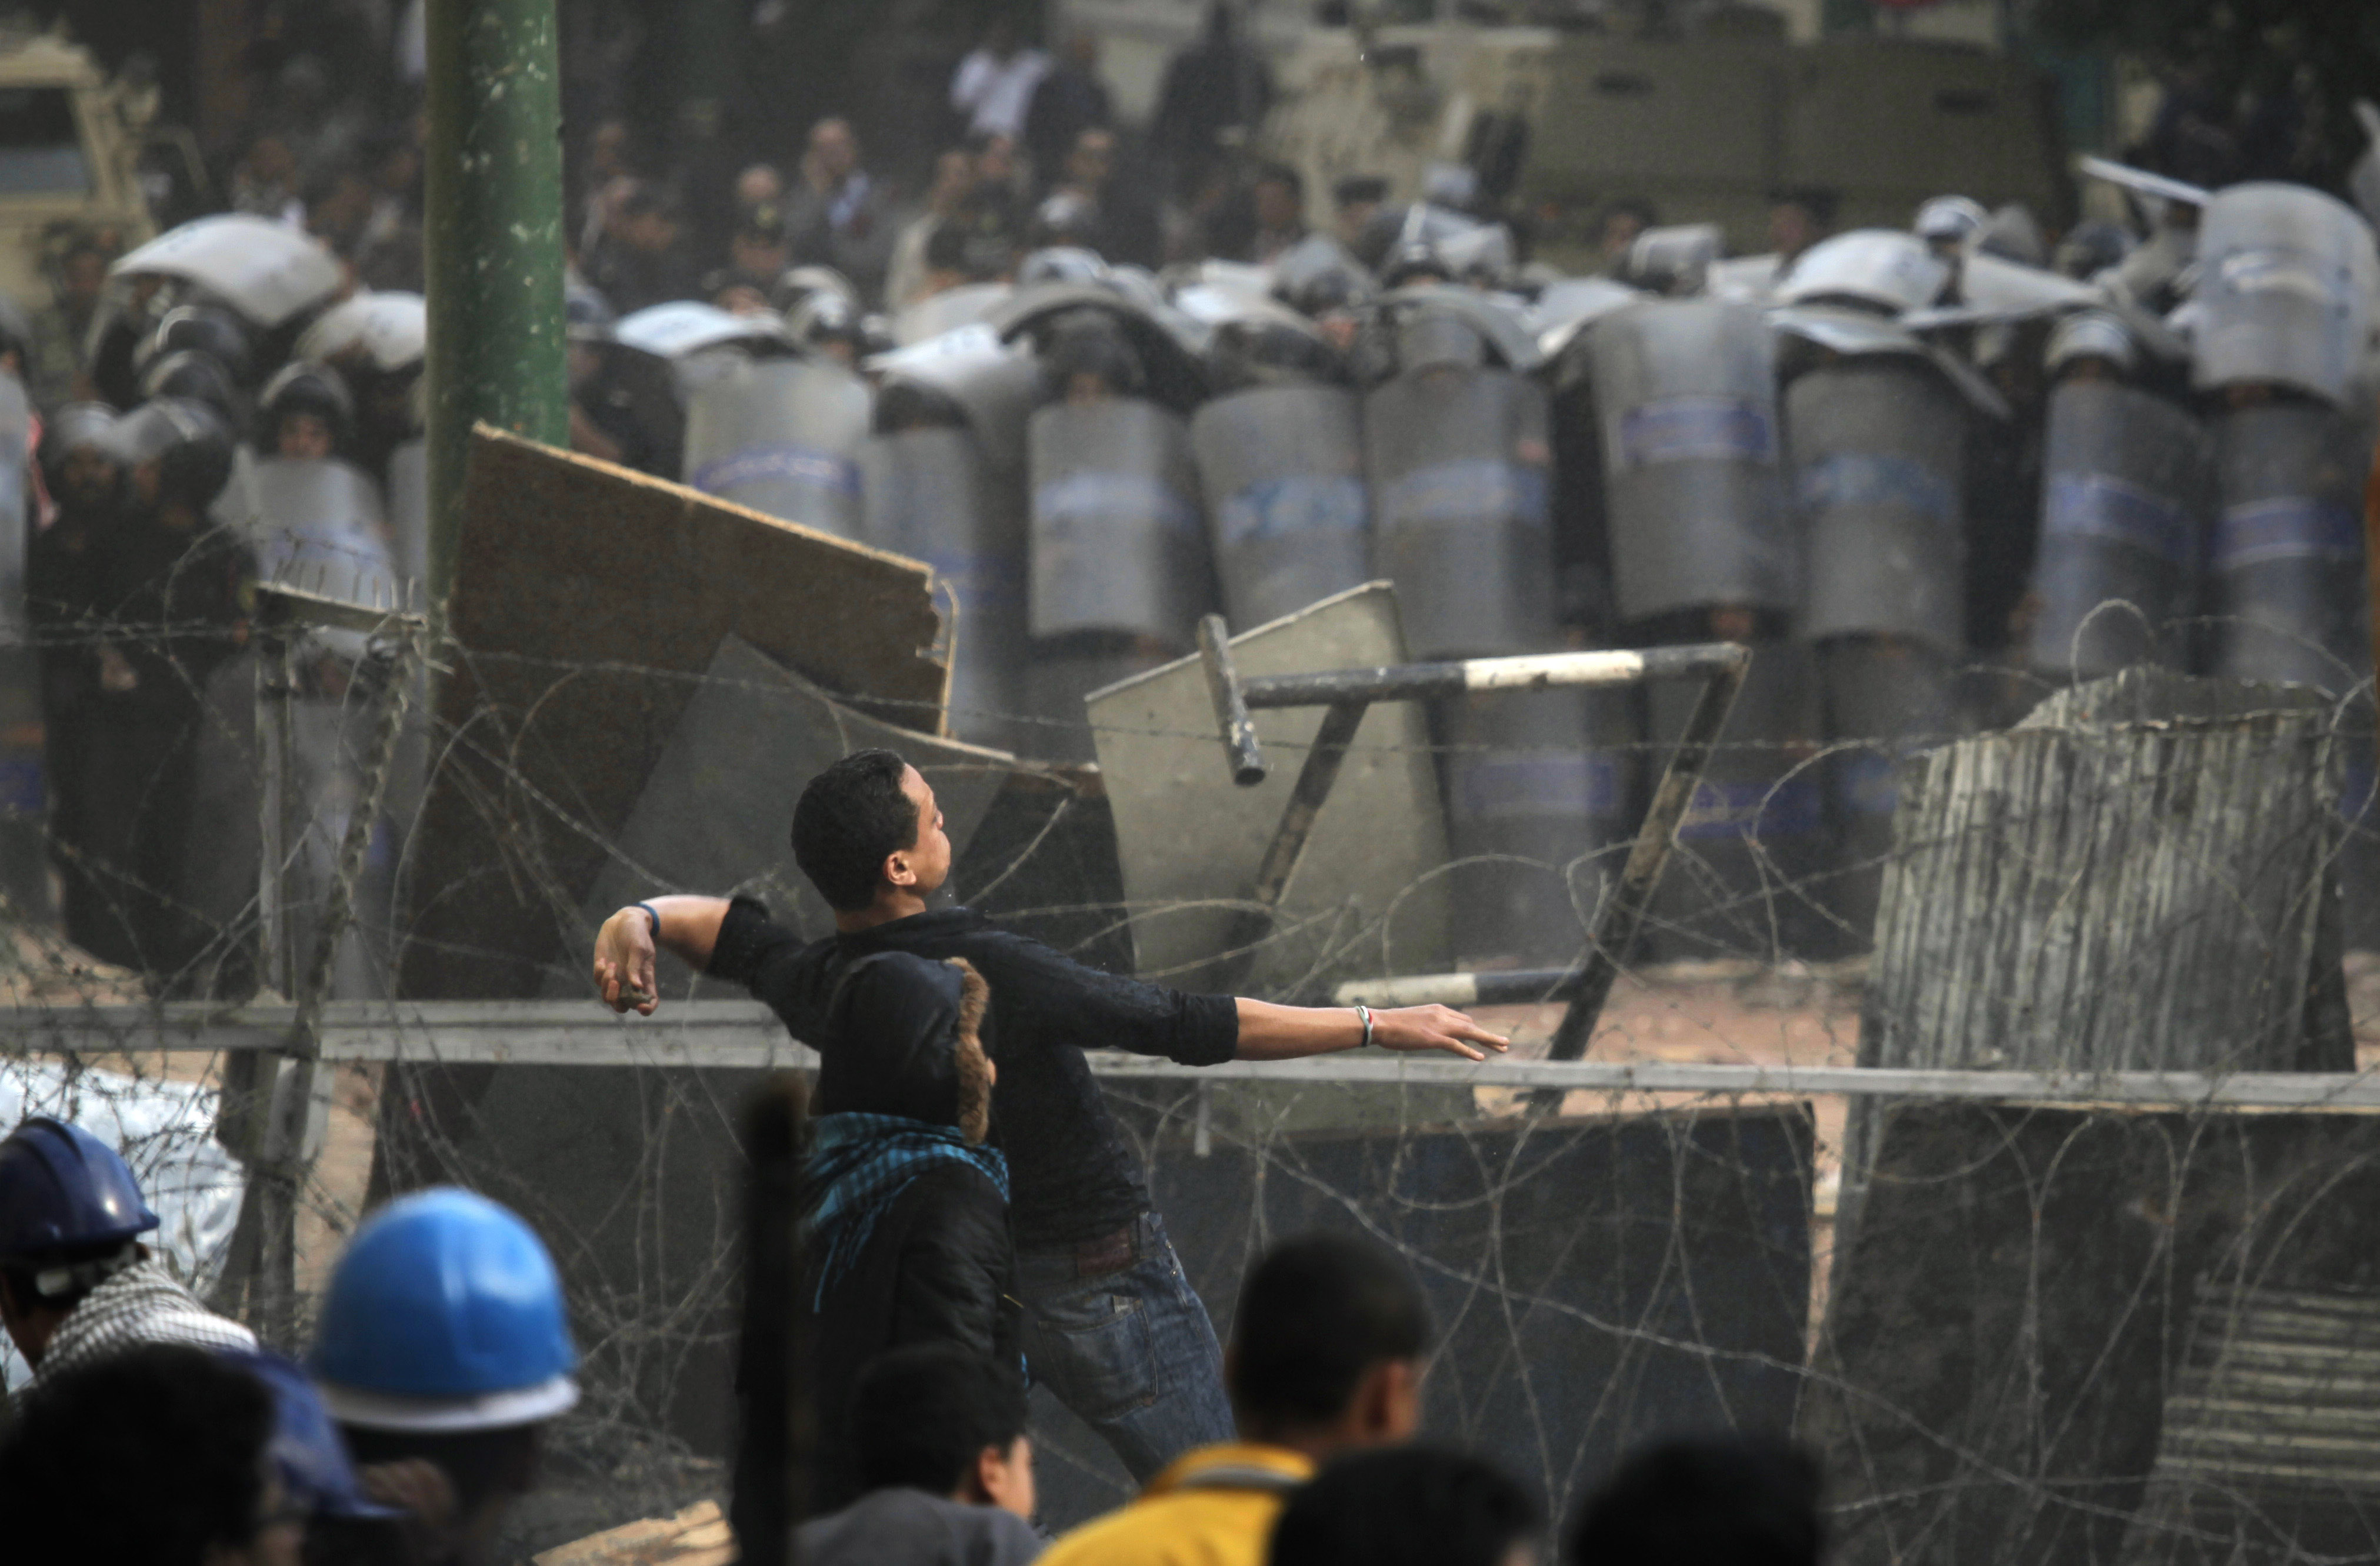 Nedslagen, Militar, Protester, Egypten, Kvinna, Demonstranter